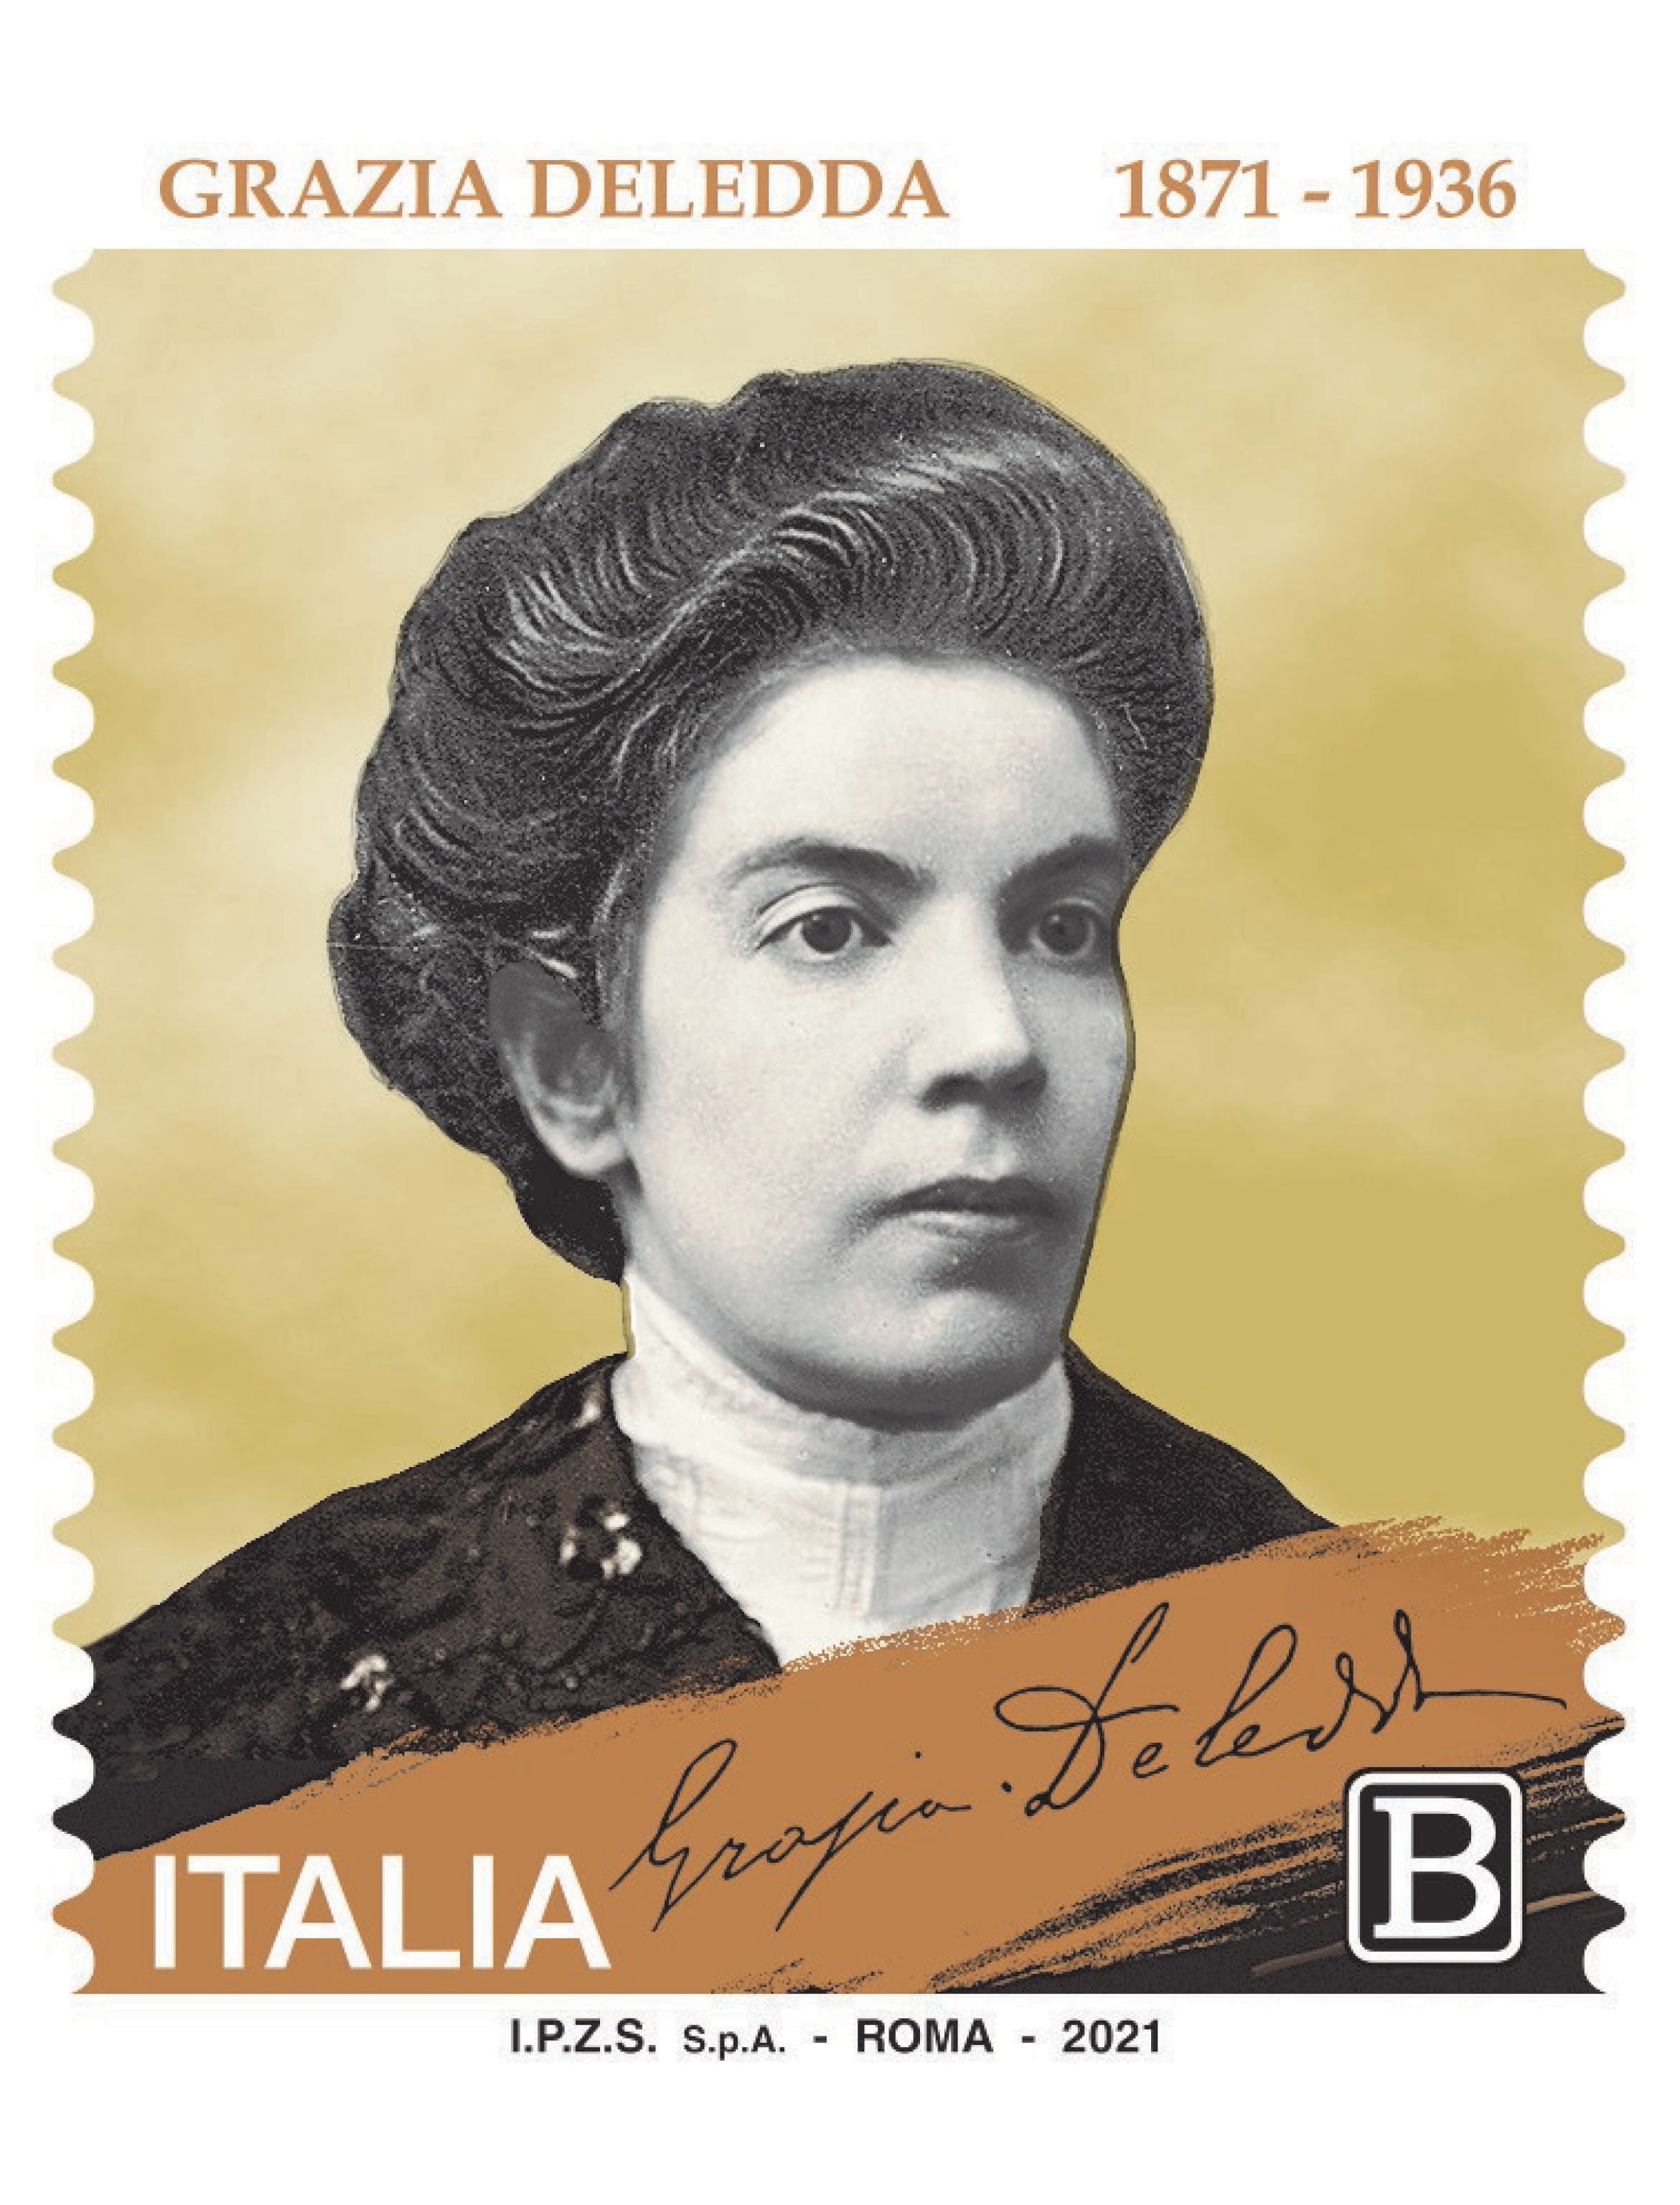 Francobollo commemorativo in occasione dei 150 anni dalla nascita della scrittrice, emesso il 27 Settembre 2021